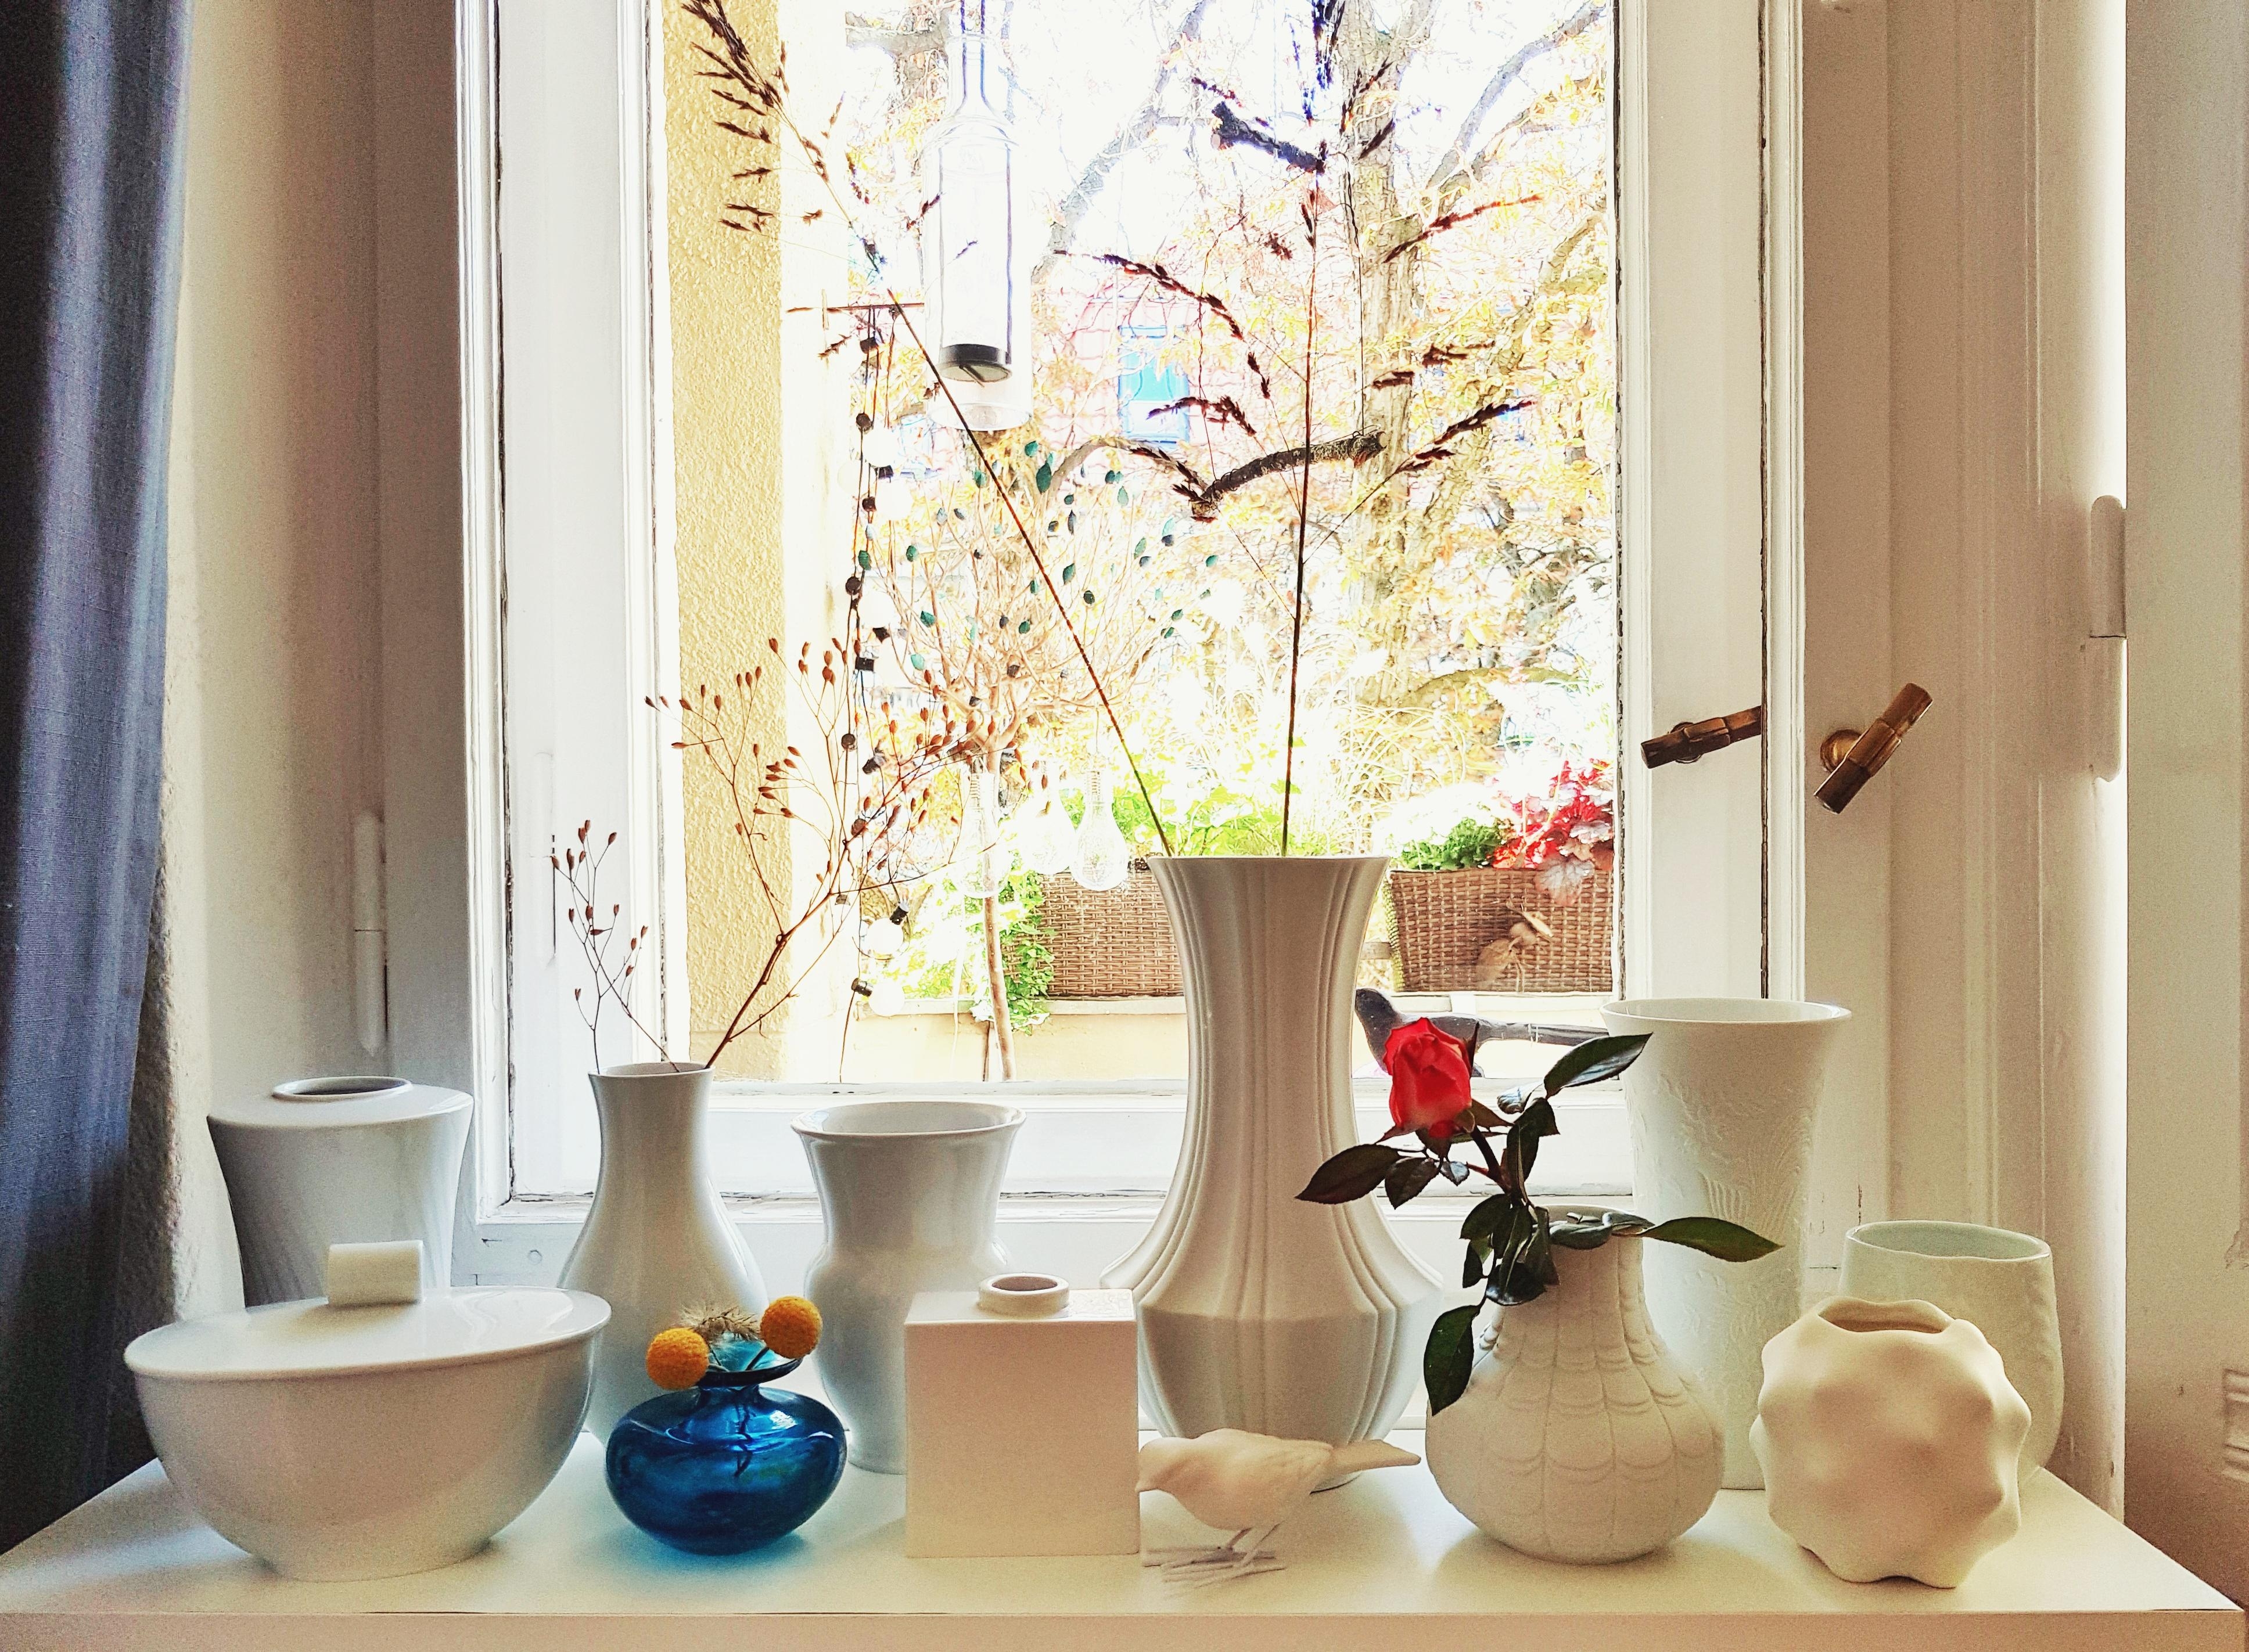 Vasen kann man doch nie genug haben #vasen #wohnzimmer #deko #herbst